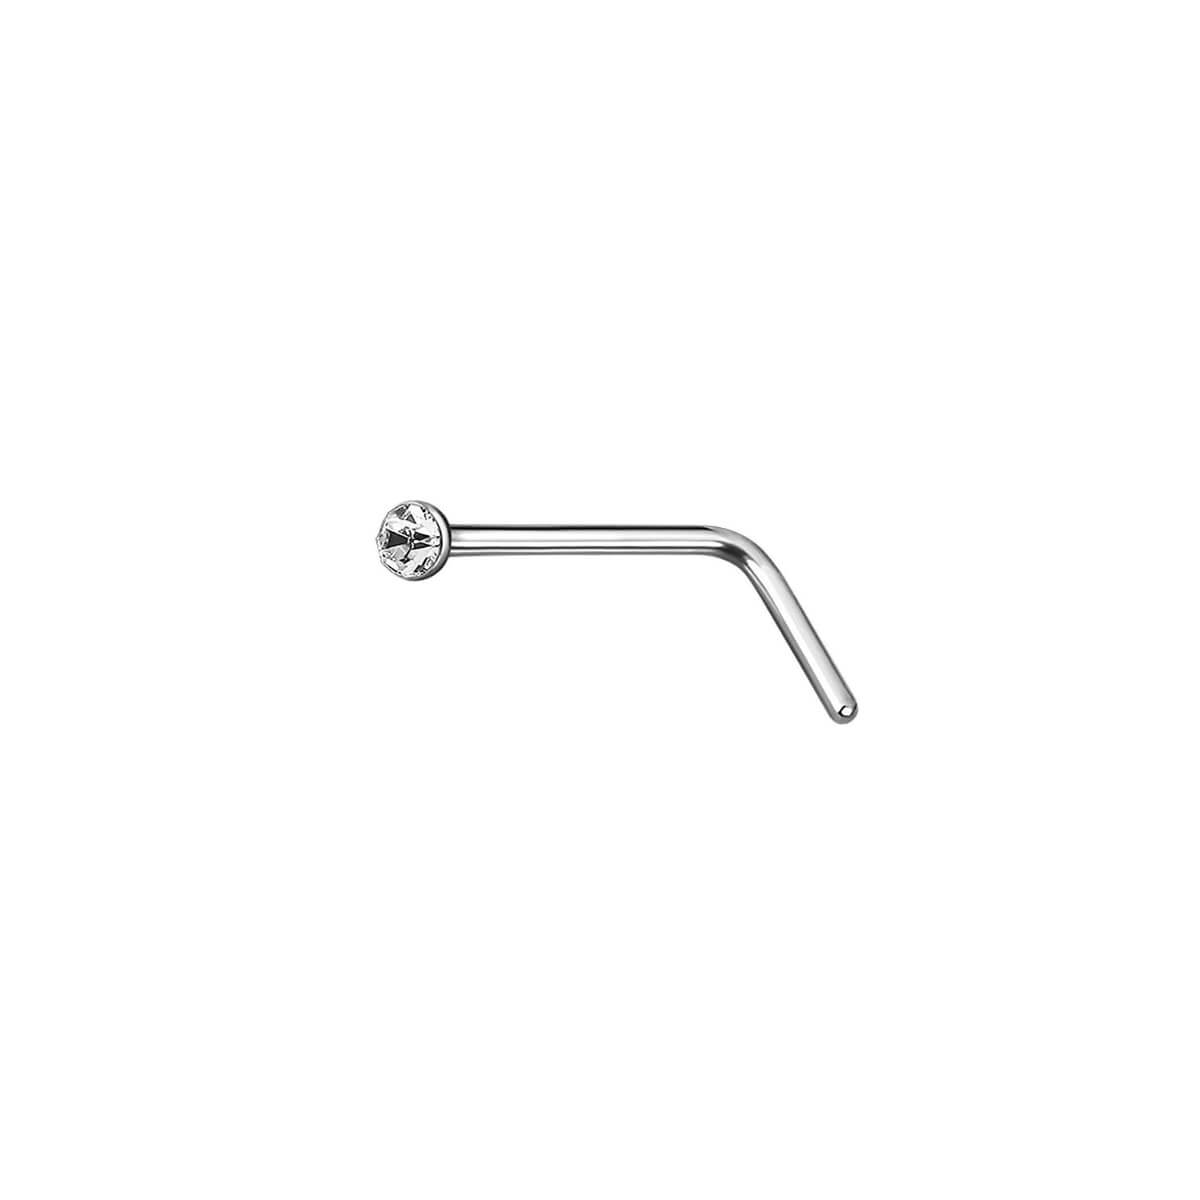 Bent nasal smycken konstgjord sätt 0,64 mm (stål 316L)